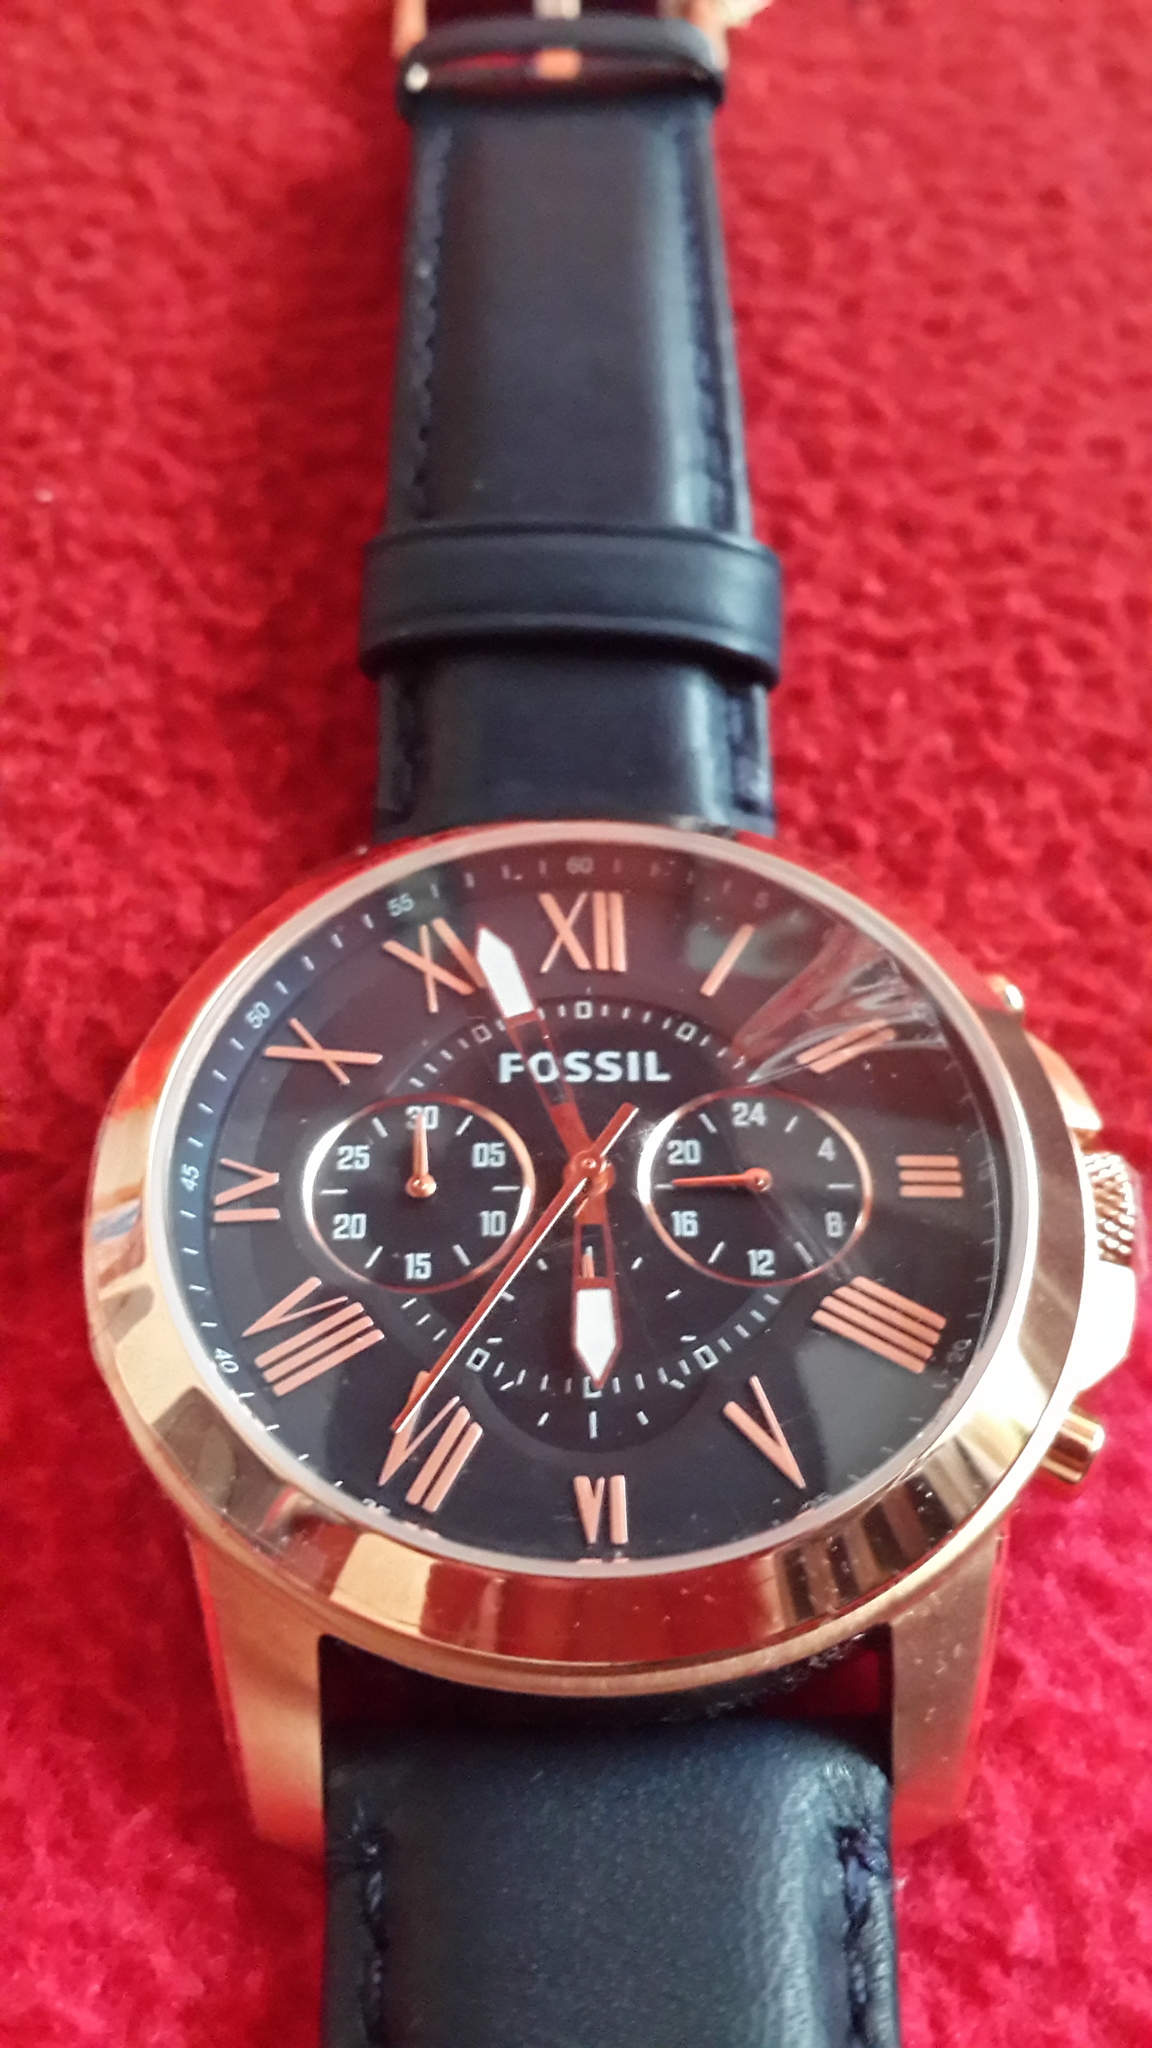  FOSSIL FS4835 Erkek Kol Saati 199 TL KLİKSA